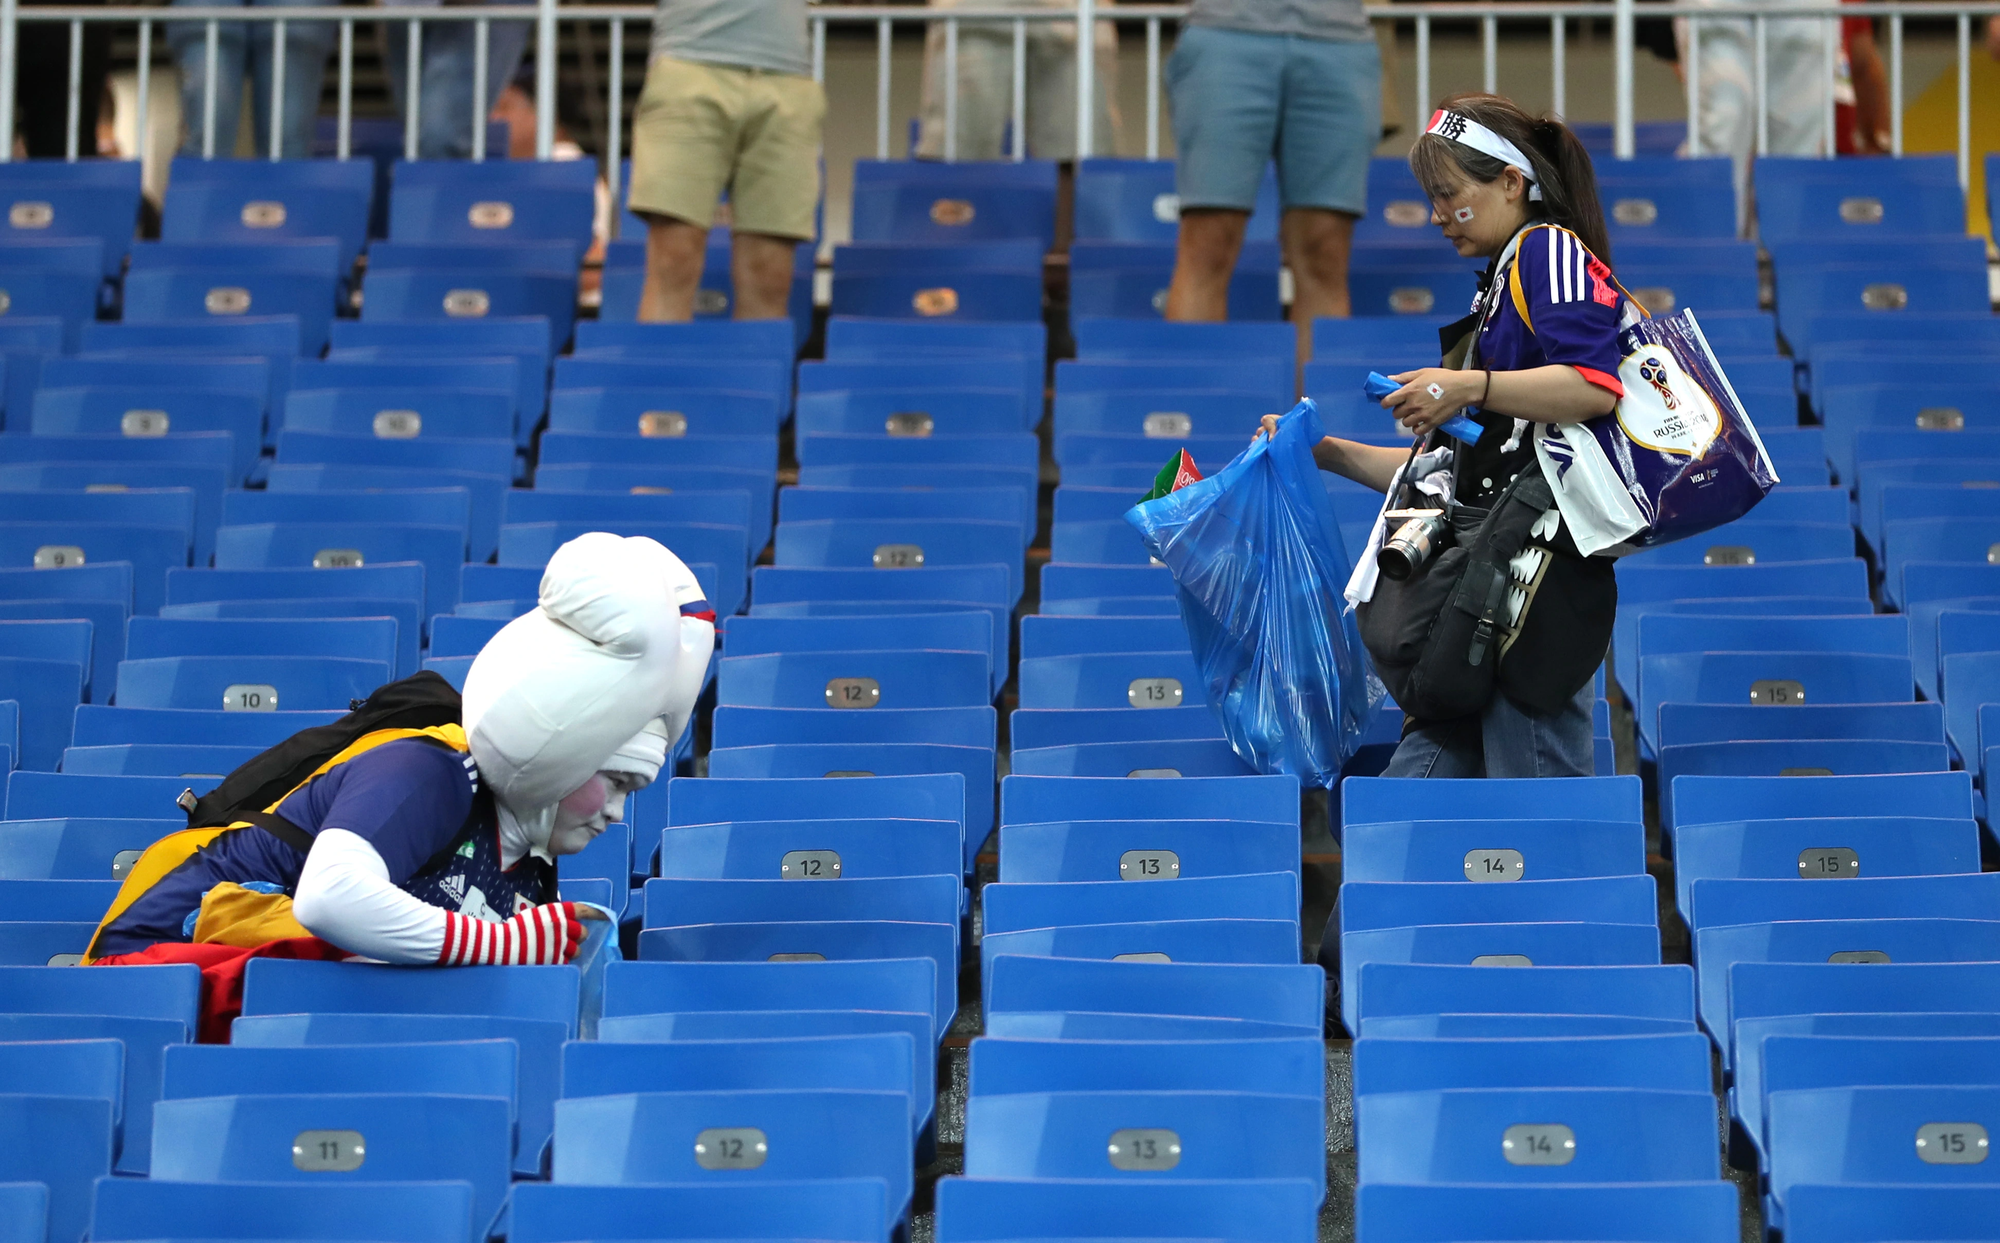 Tinh tế như cổ động viên Nhật Bản: ở lại dọn rác sau trận đấu dù đội nhà chưa thi - Ảnh 1.